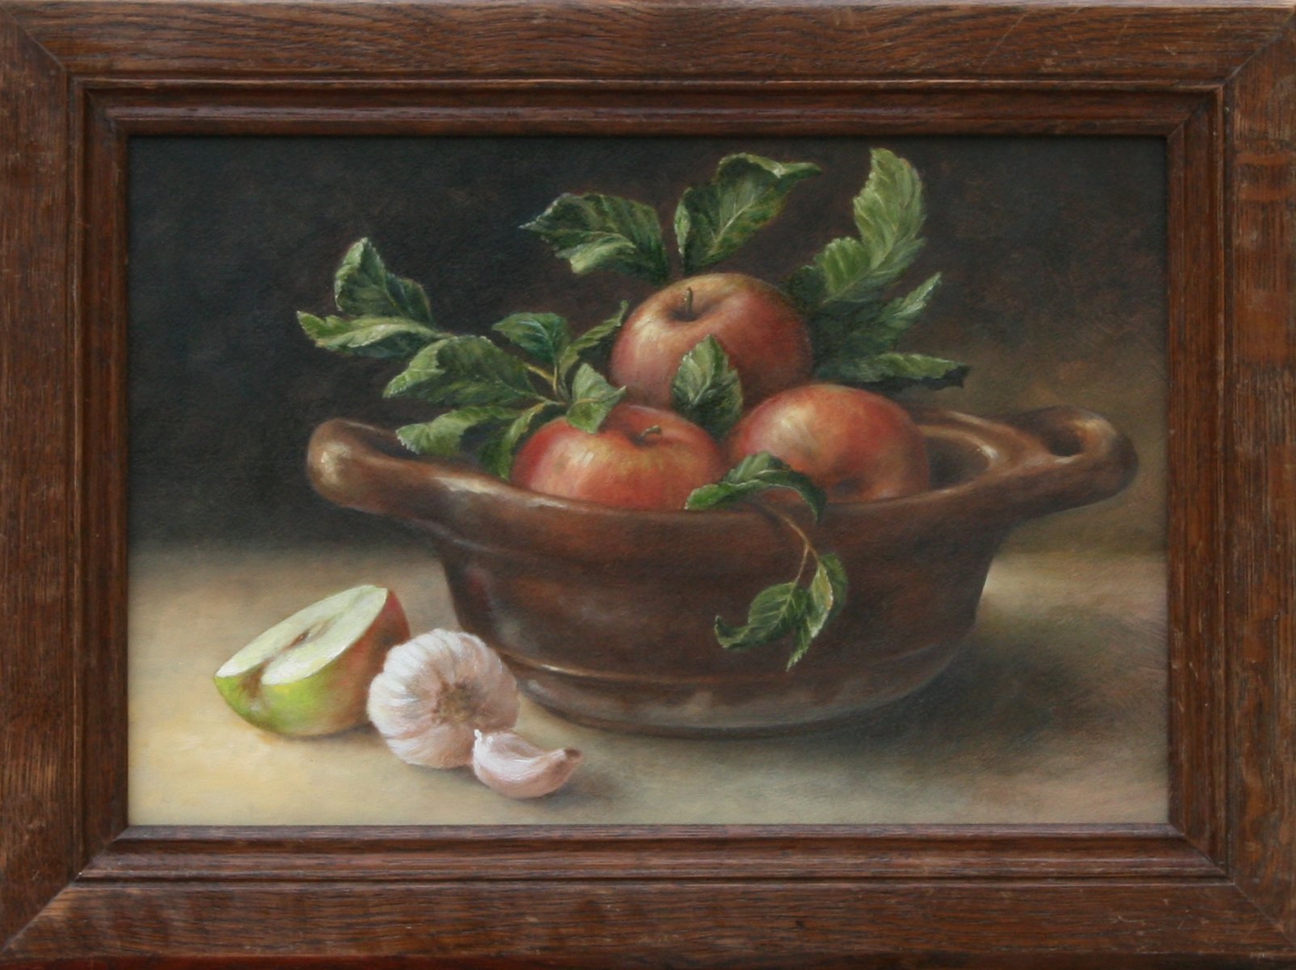 Stilleven met appels in een franse schaal, er naast ligt knoflook.  Geschilderd door Els Vink.